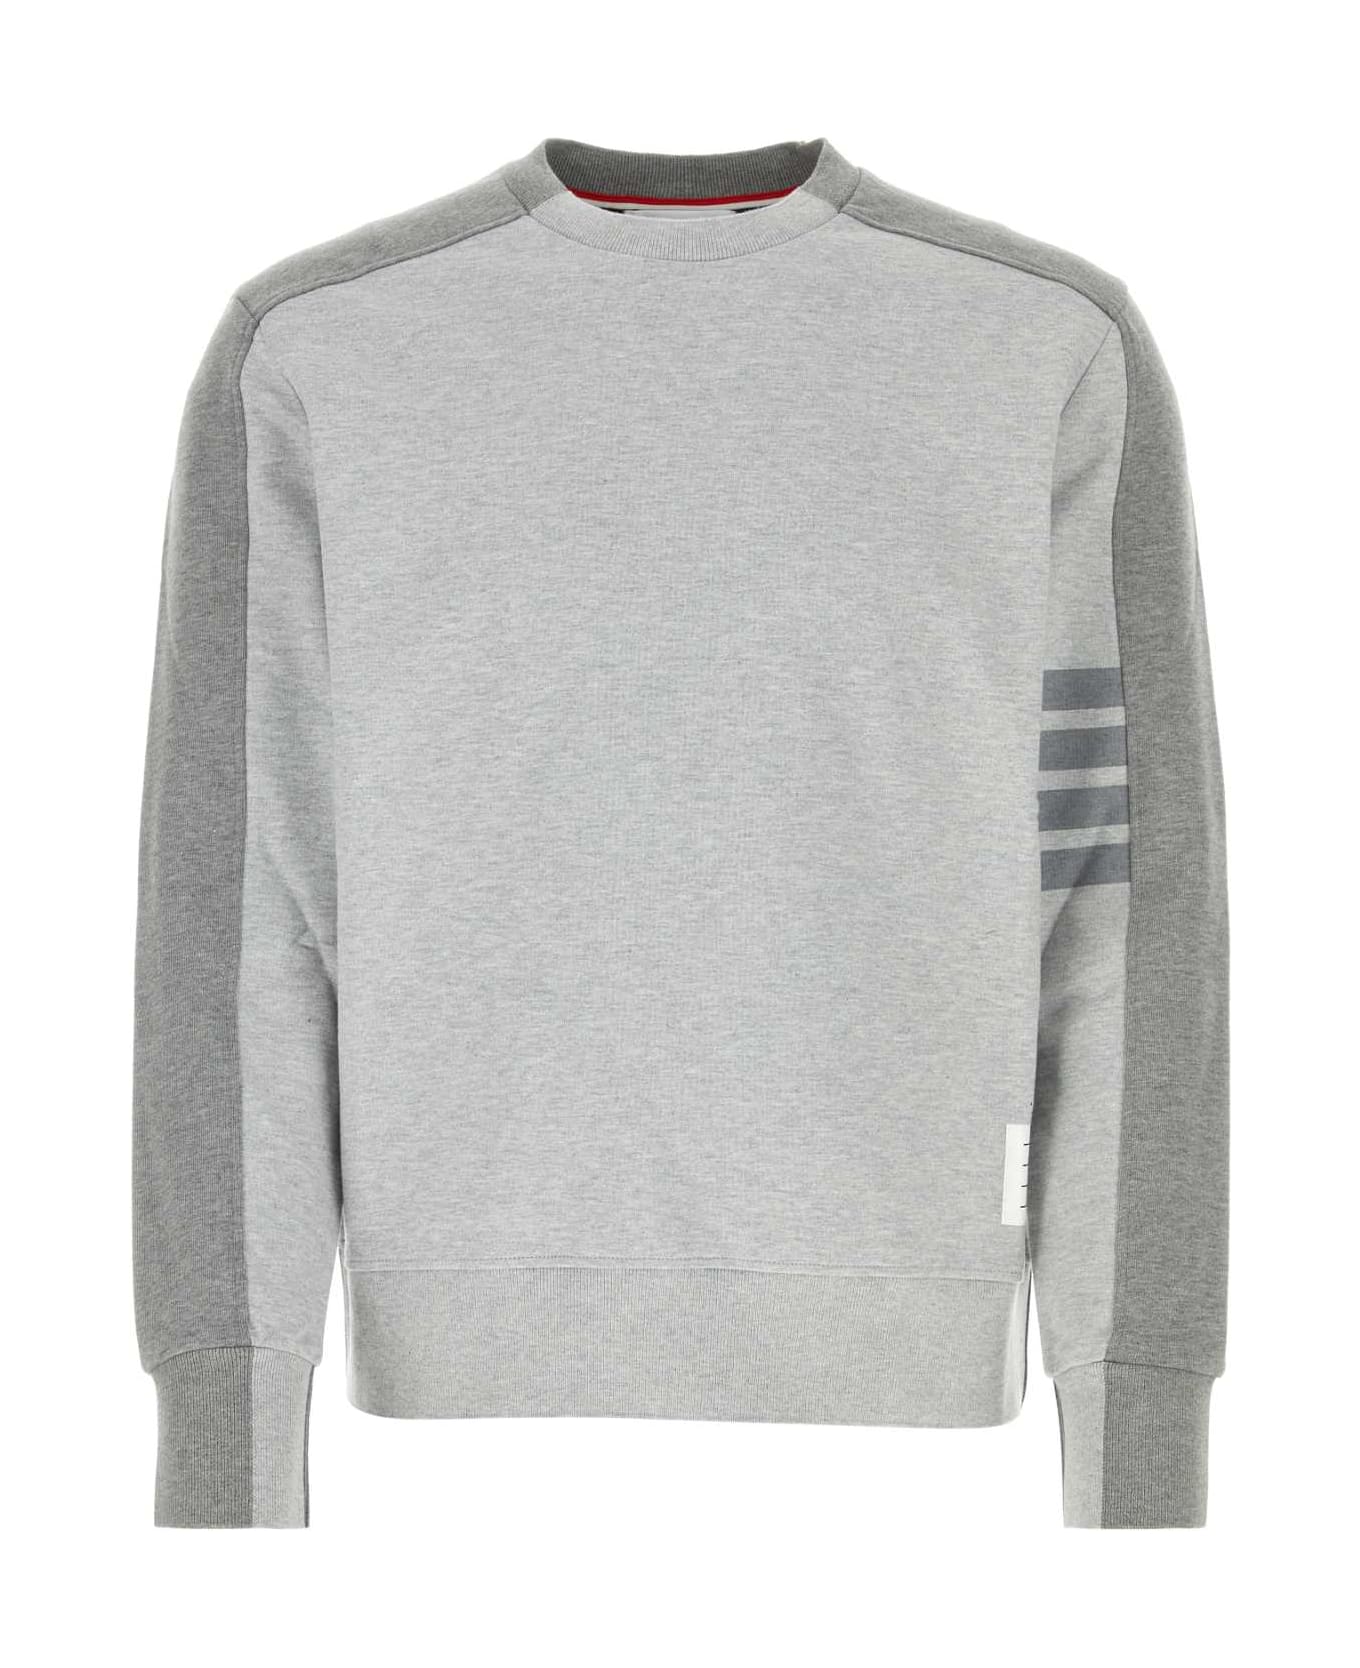 Thom Browne Melange Grey Cotton Sweatshirt - LTGREY